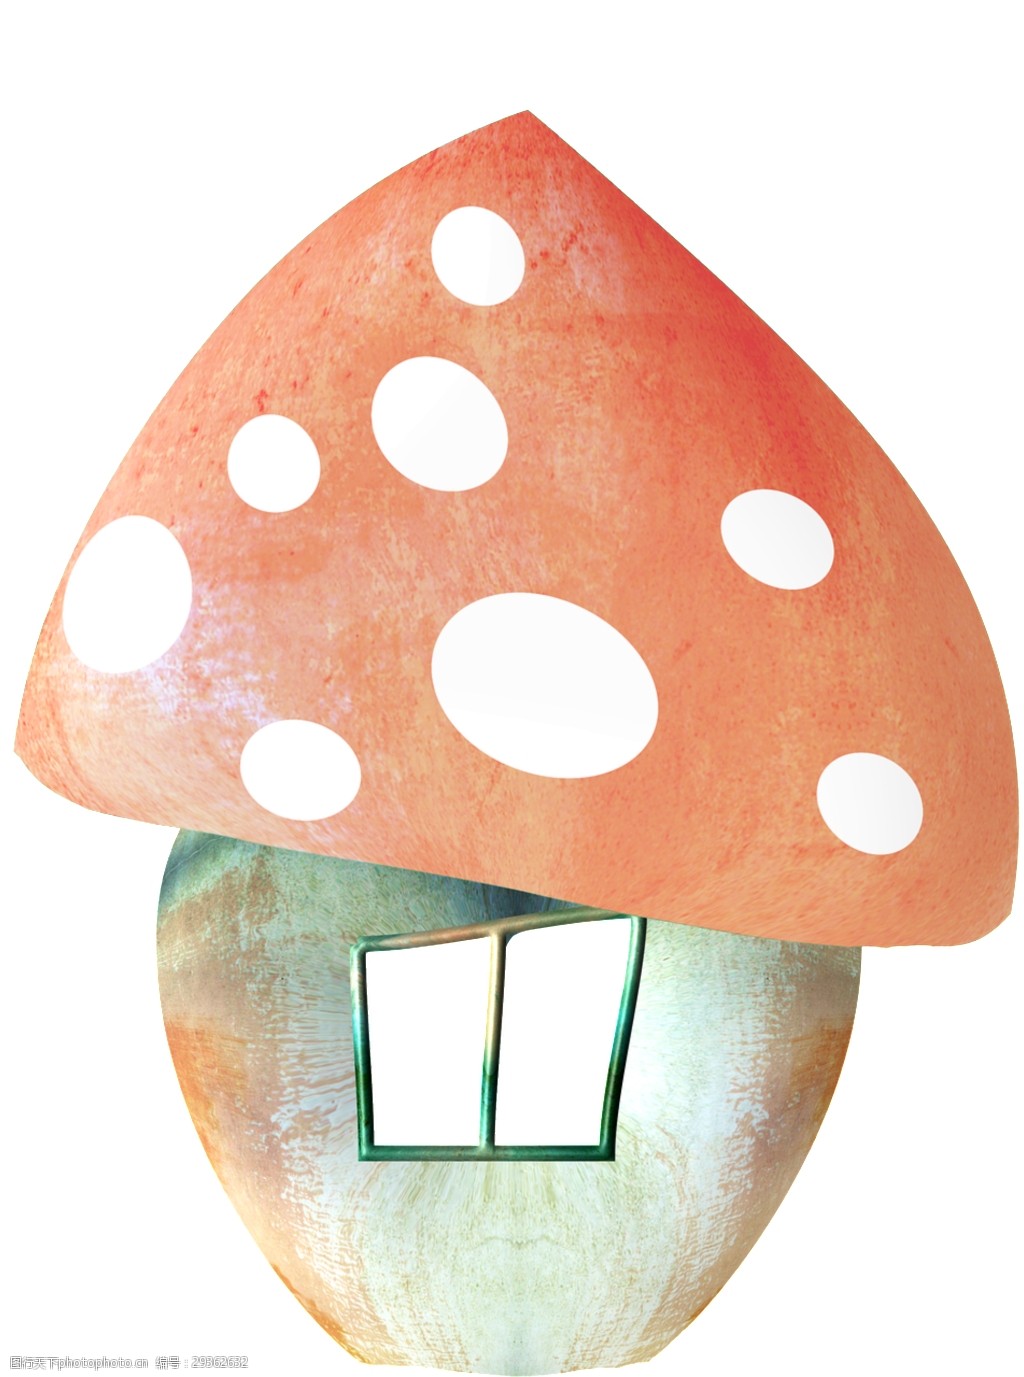 关键词:彩绘童话蘑菇屋图案设计 蘑菇屋 童话素材 童话图案 童话元素